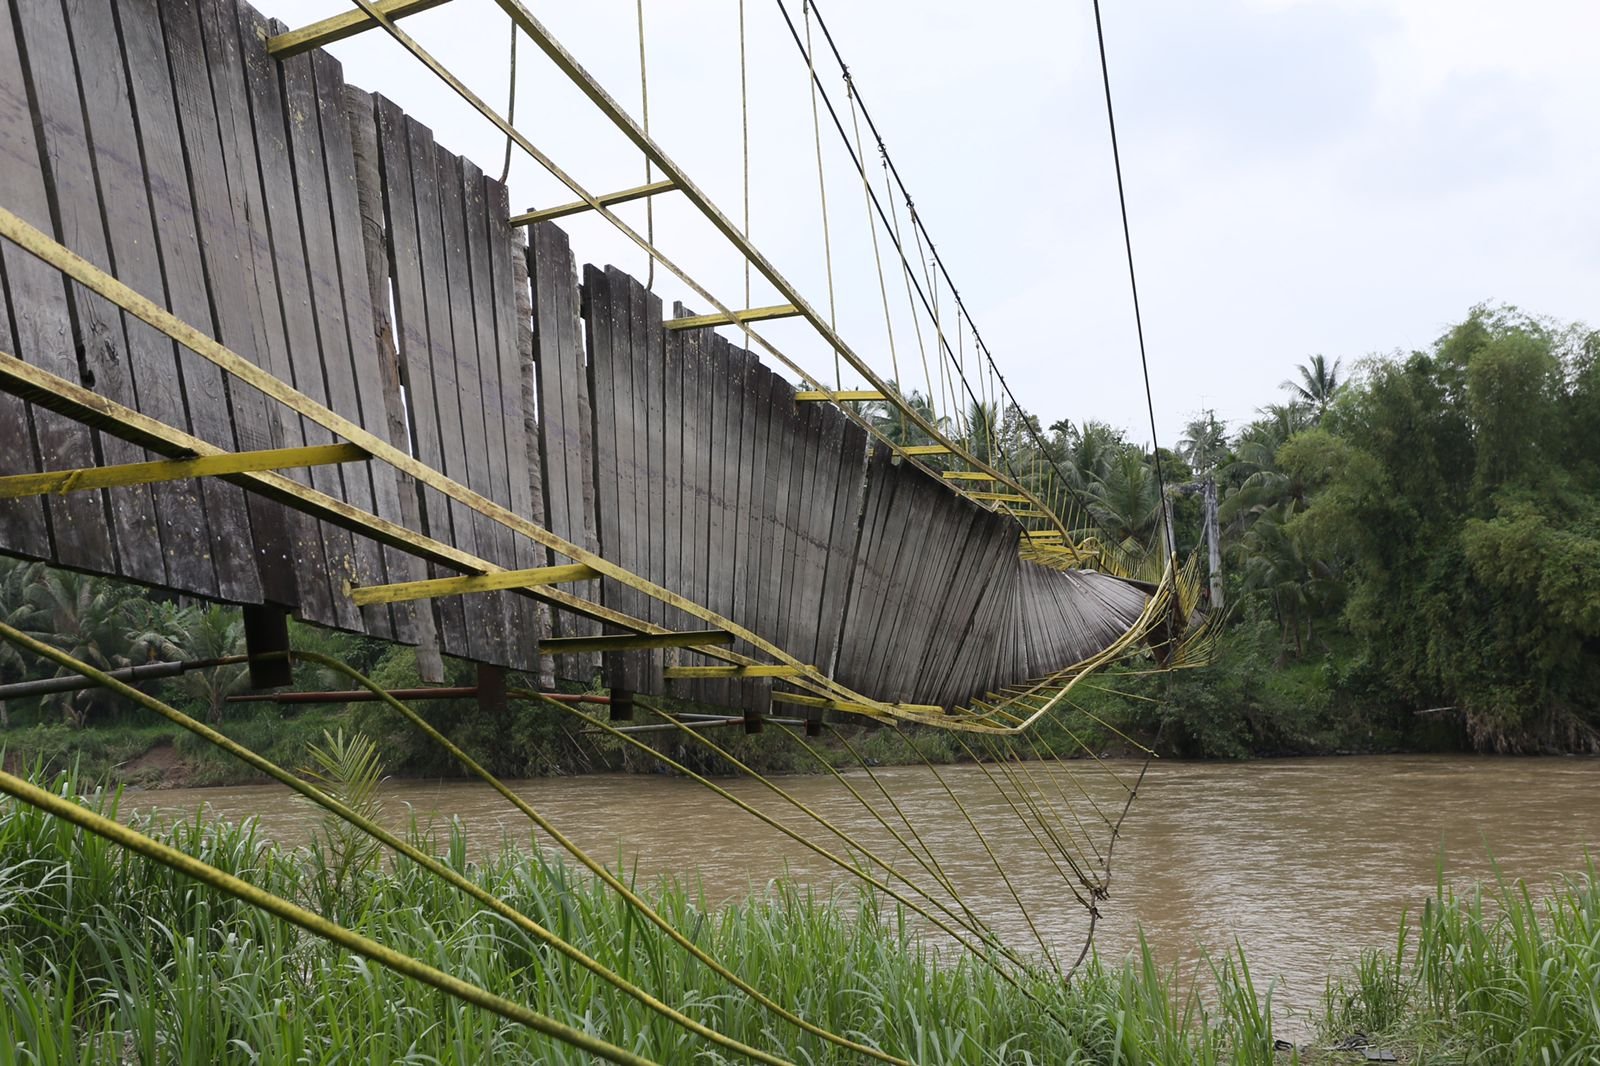 Jembatan Gantung Awe Geutah Peninggalan Zaman Belanda Sudah Lama Rusak